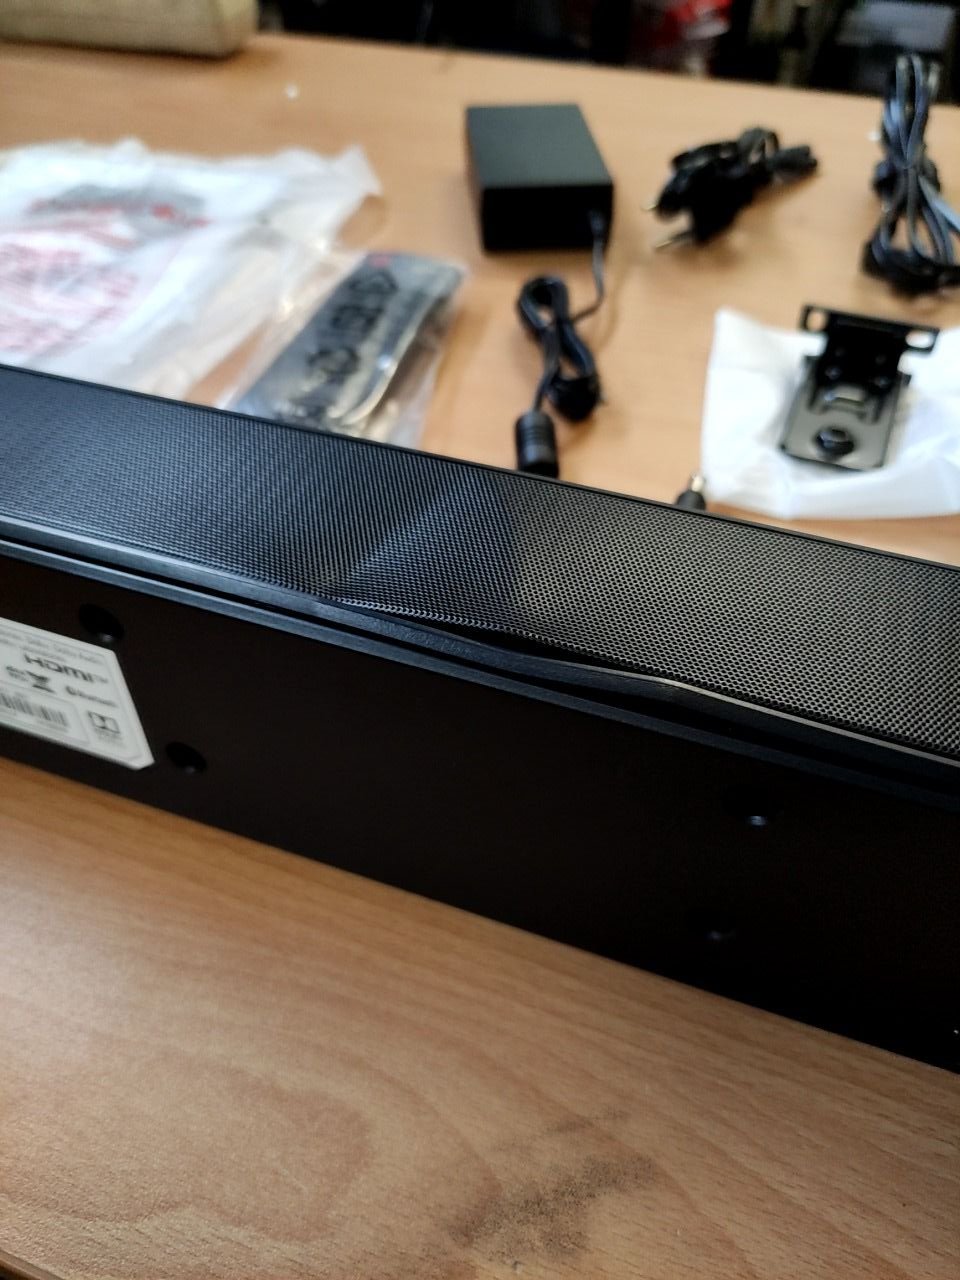 2.1 kanálový soundbar s bezdrátovým subwooferem LG SN5